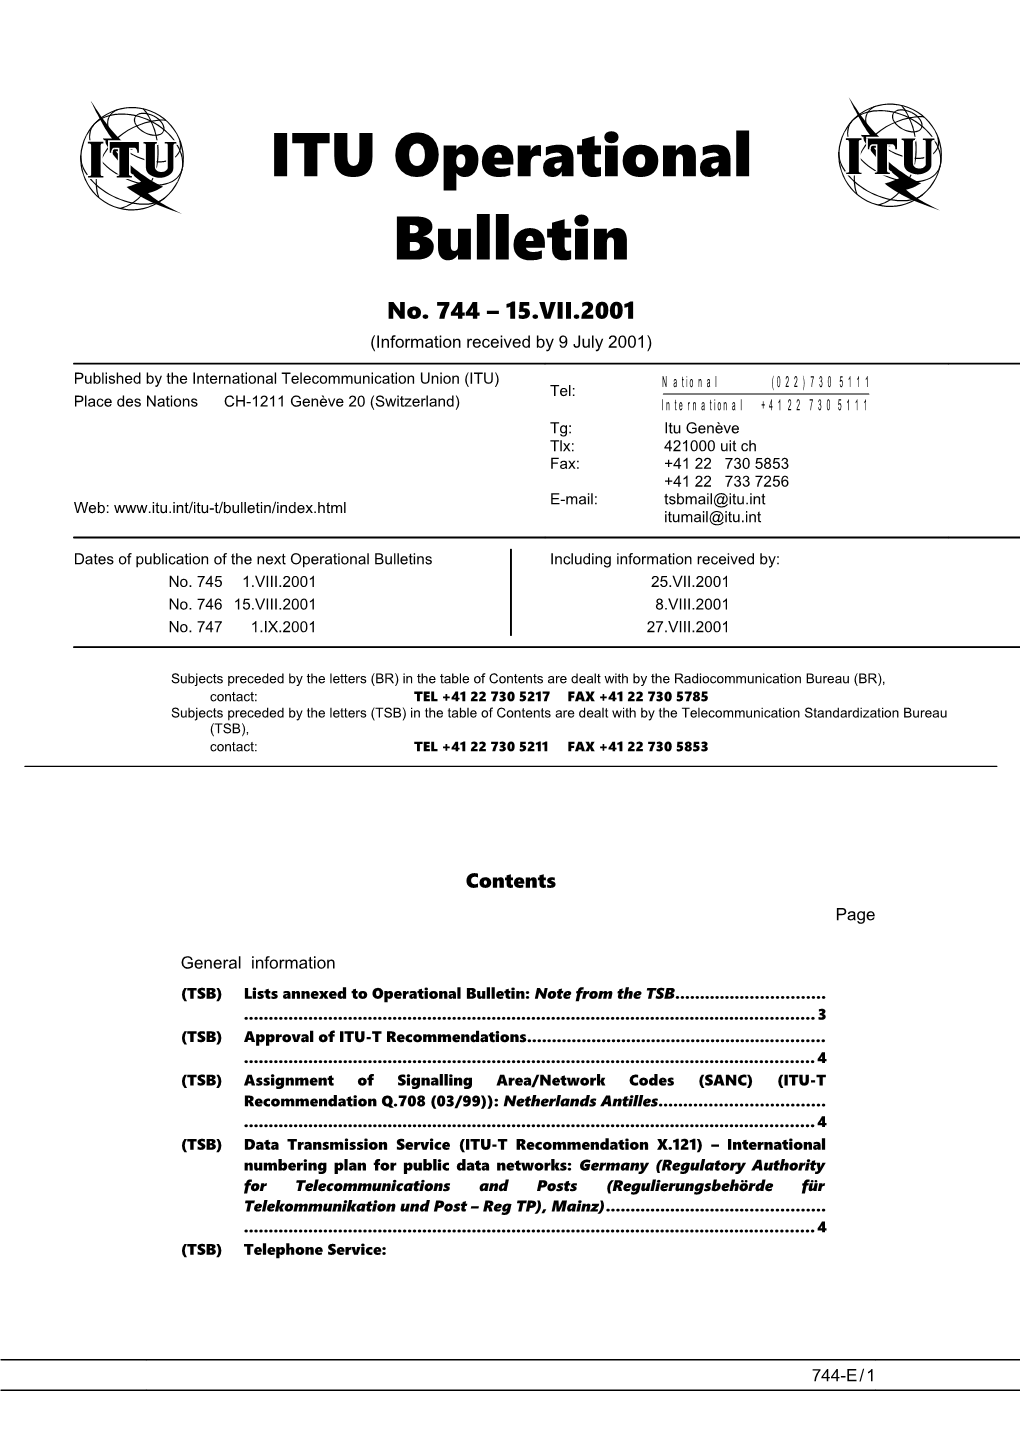 ITU Operational Bulletin 744 - 15.VII.2001